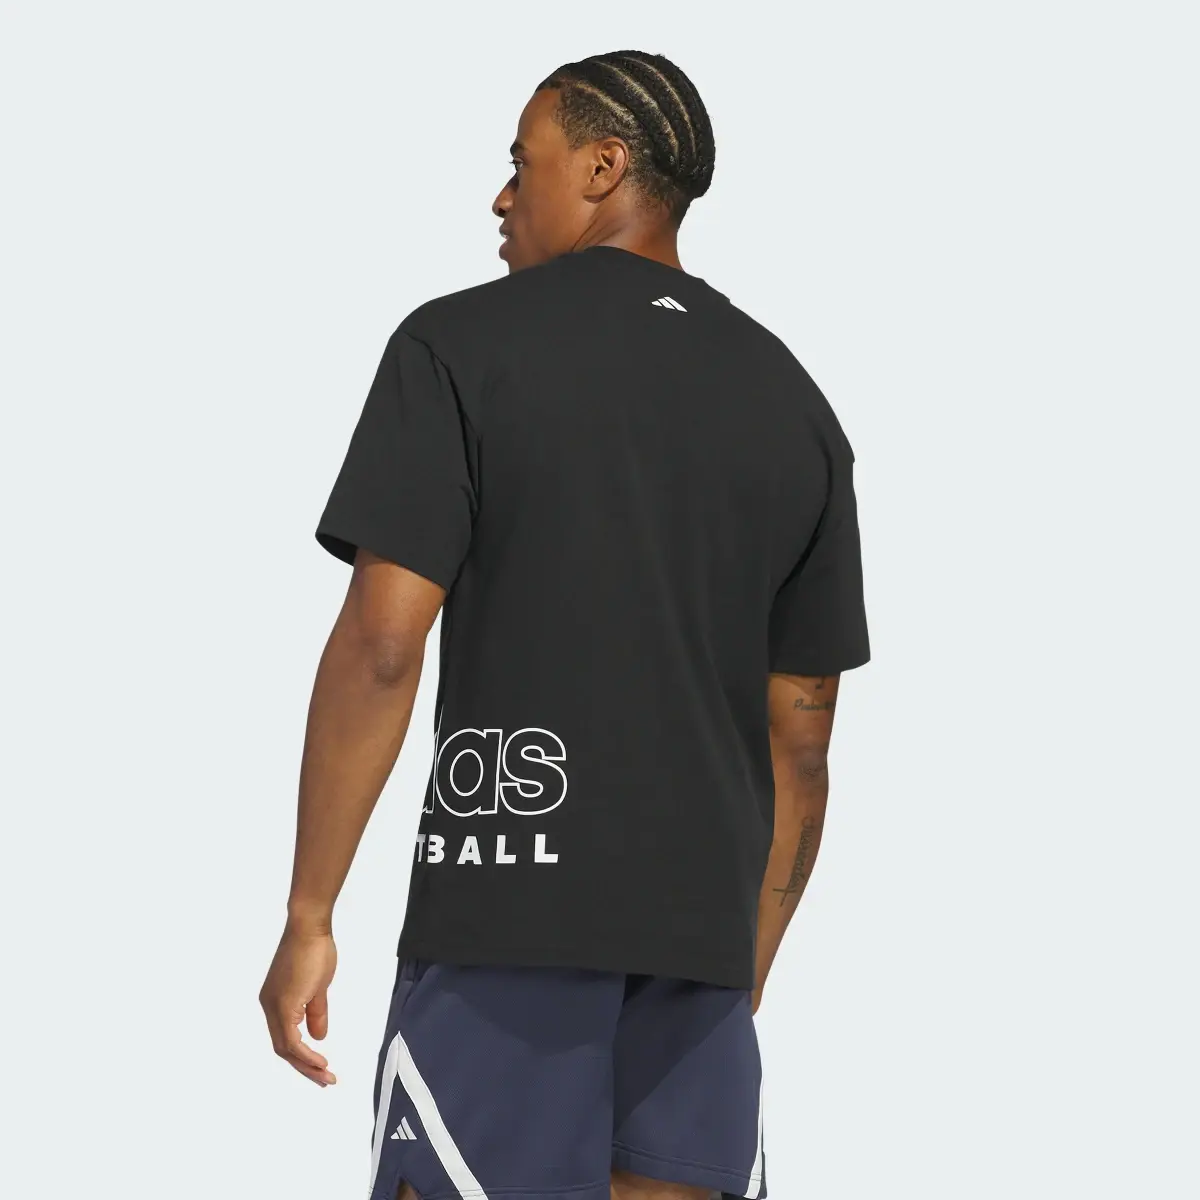 Adidas T-shirt Select adidas Basketball. 3